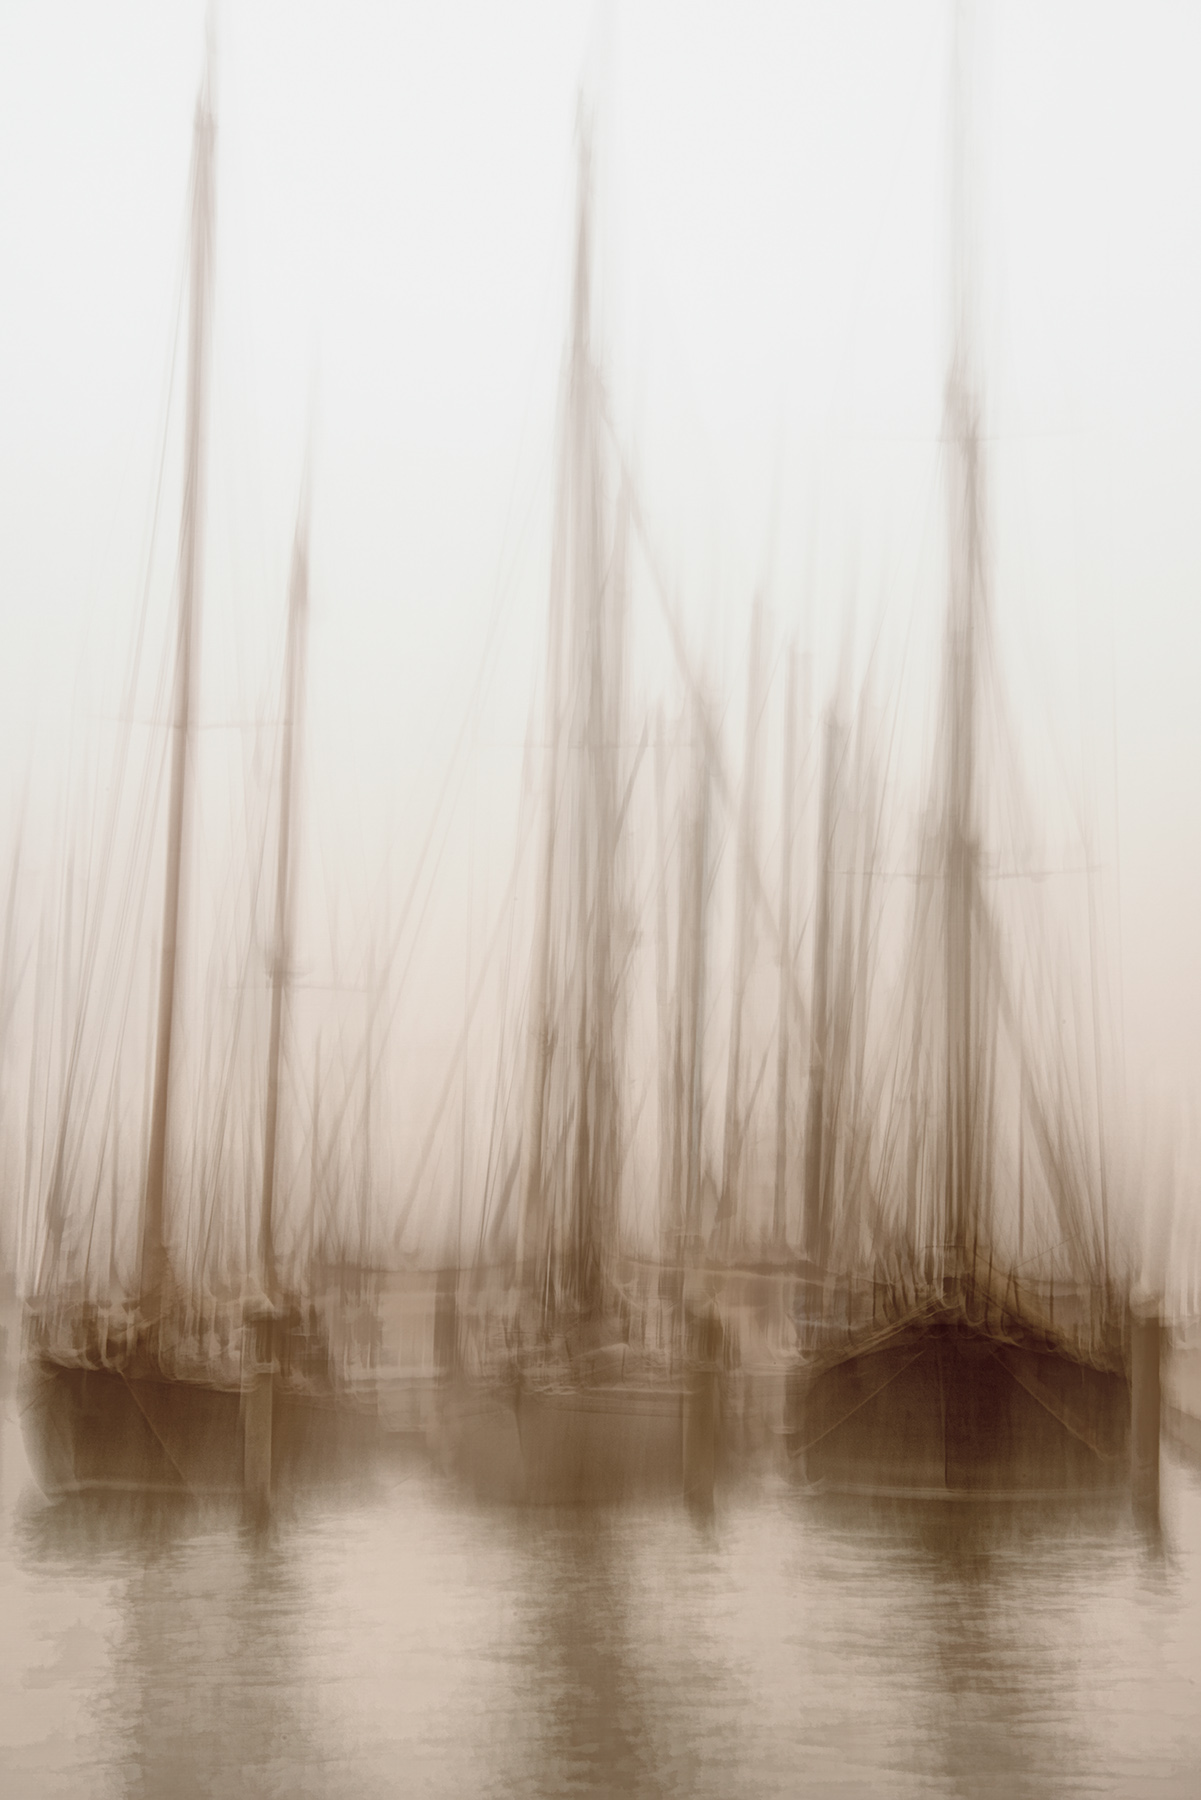 Tall Ships © Harold Davis